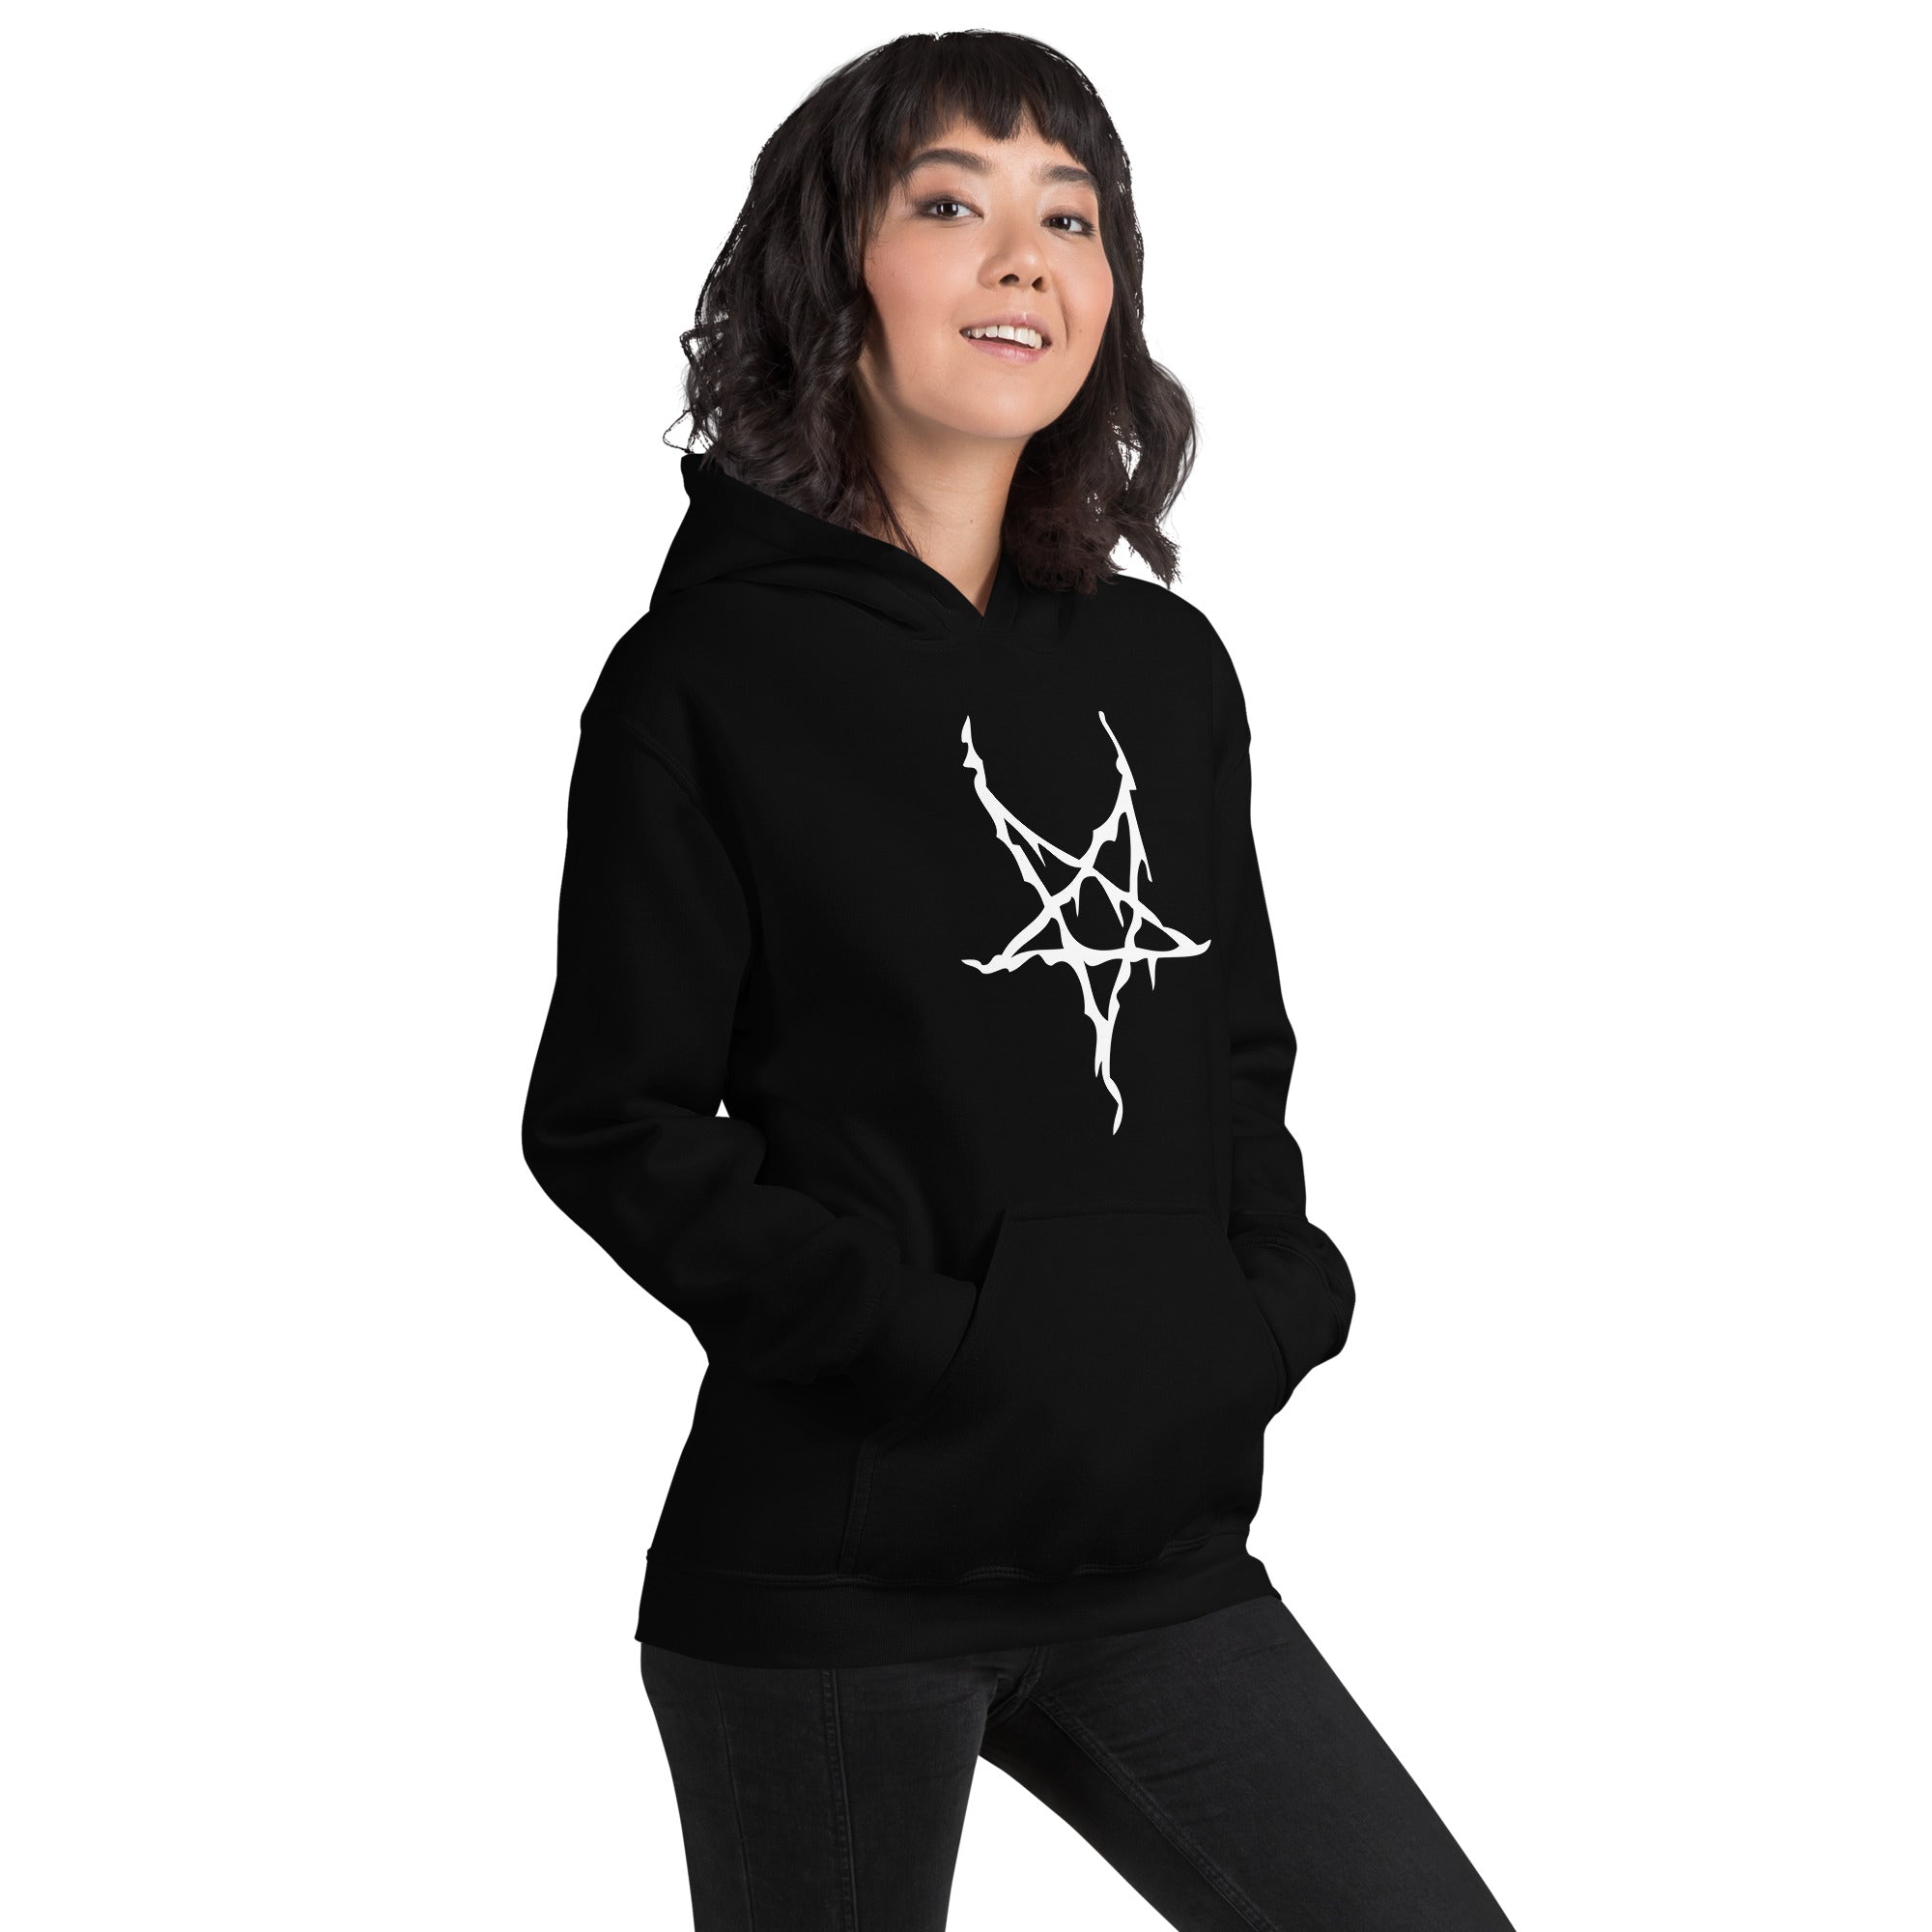 White Melting Inverted Pentagram Black Metal Style Unisex Hoodie Sweatshirt